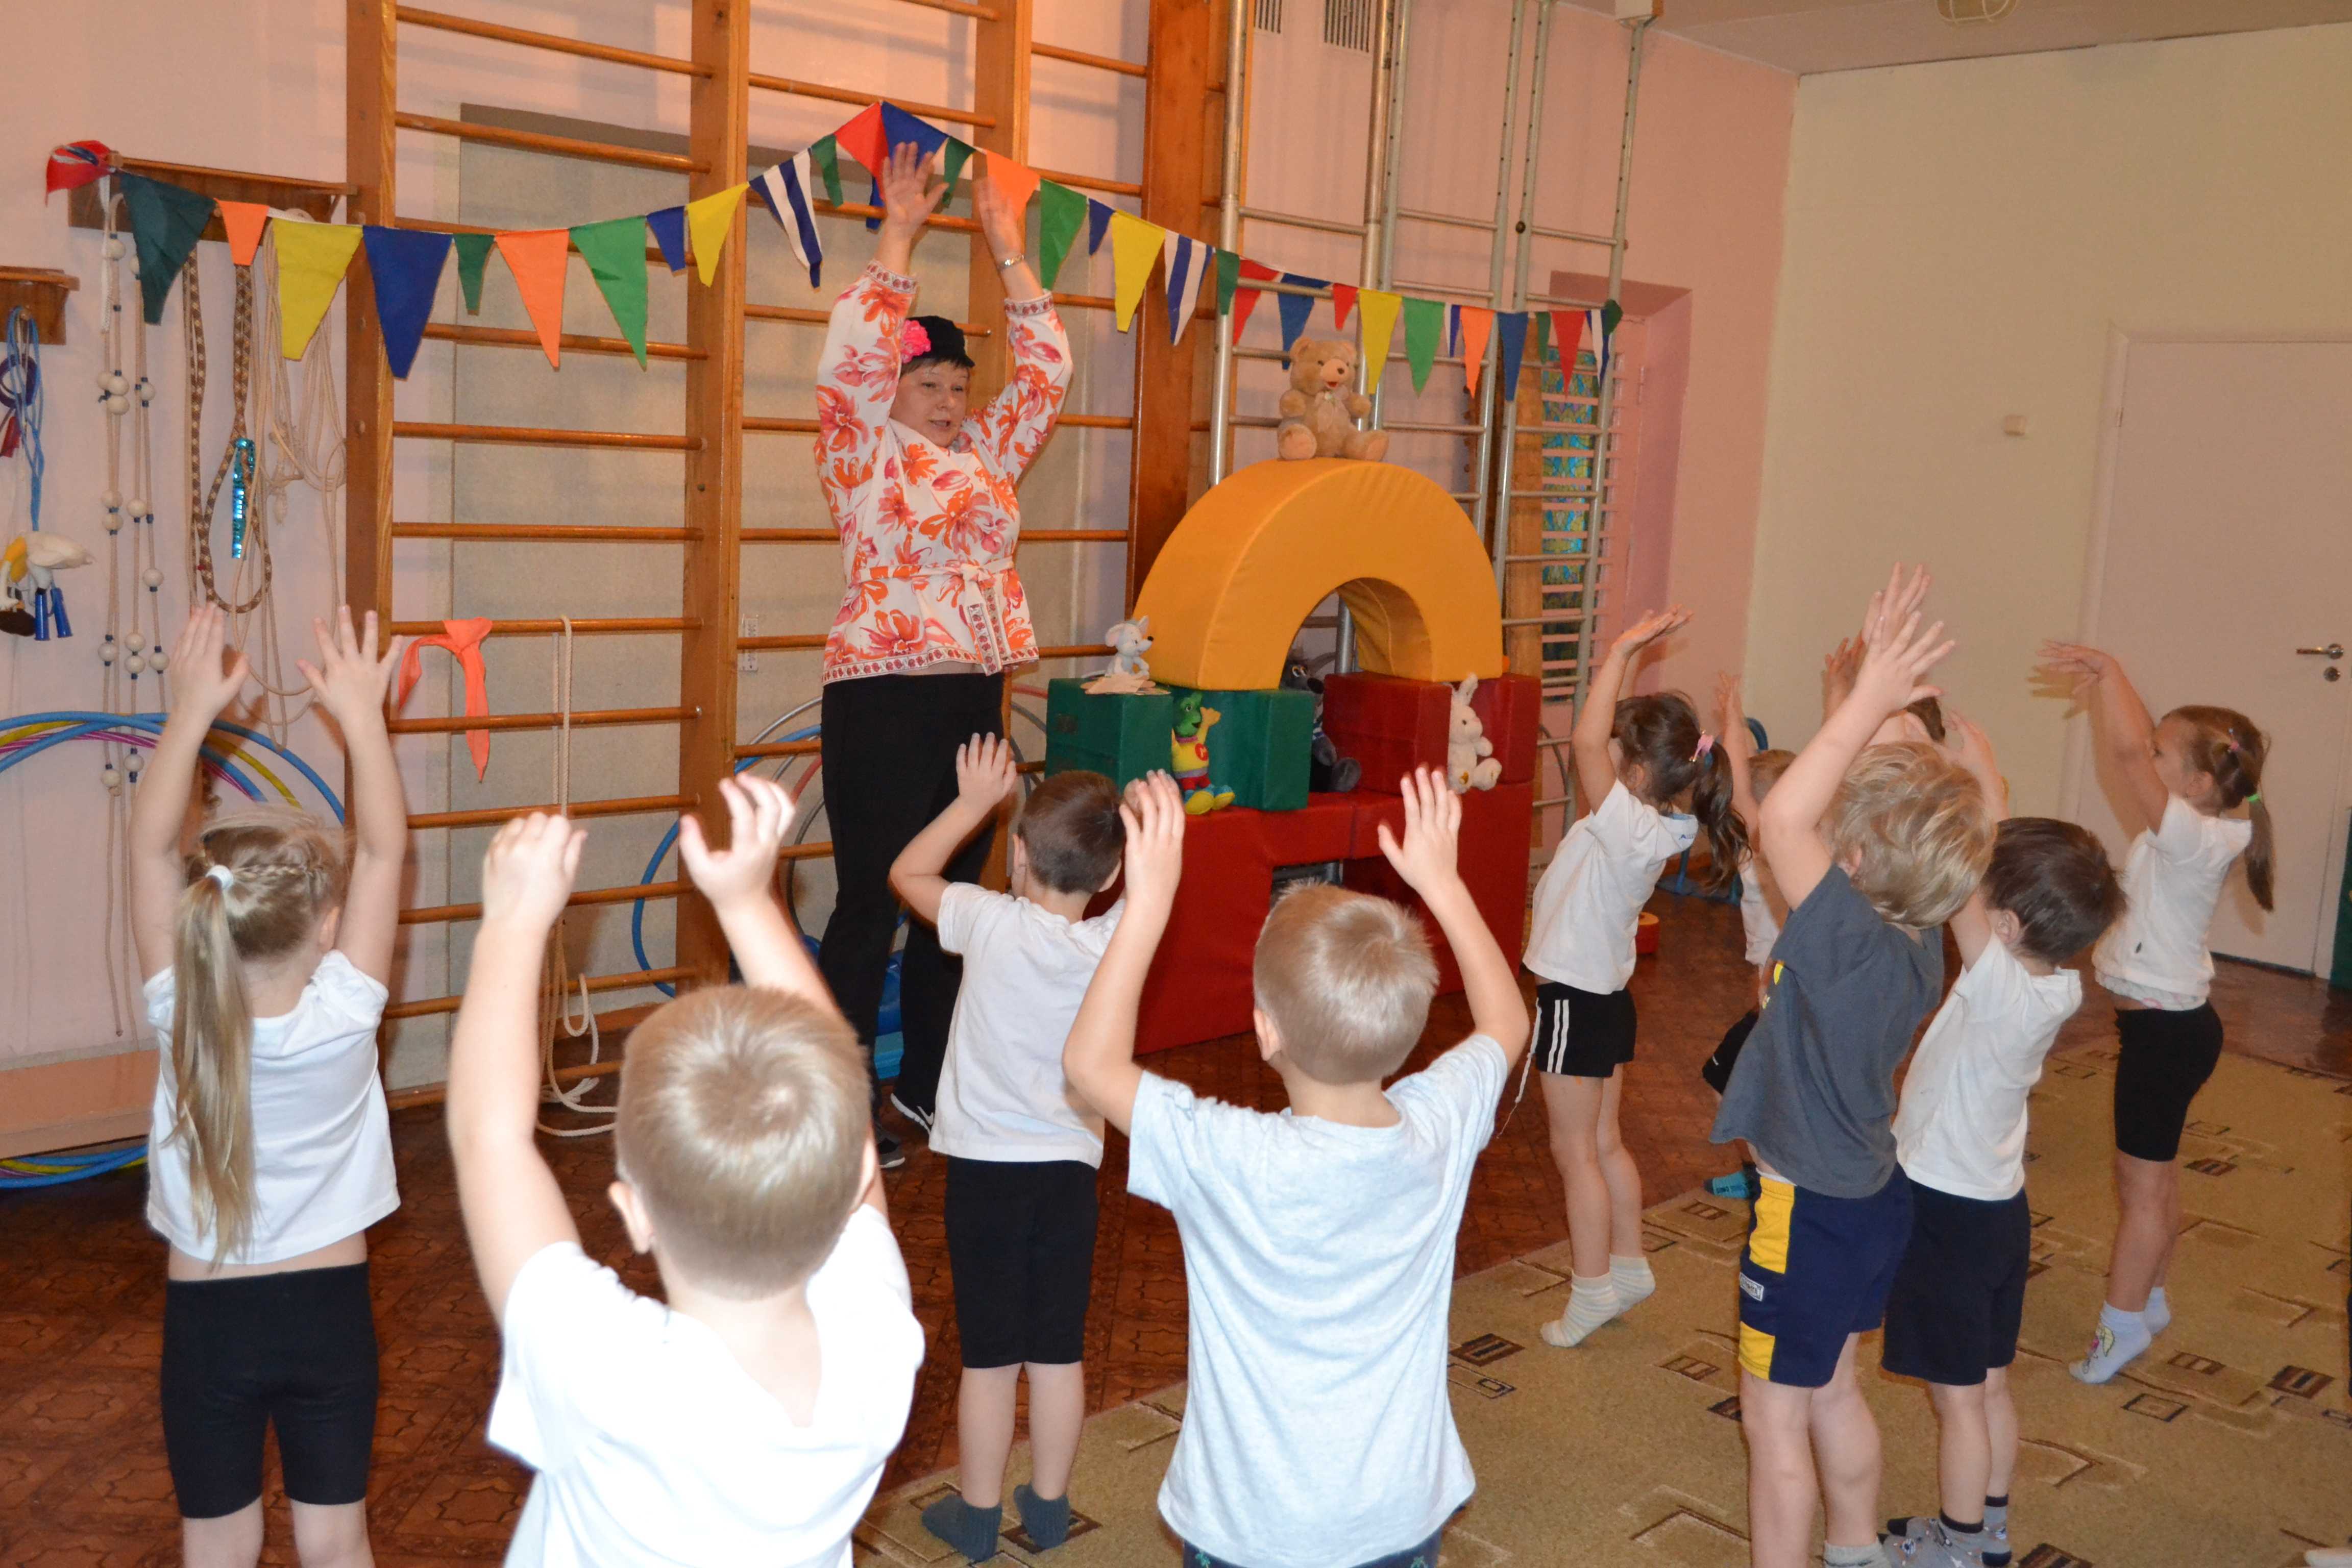 Физкультурный досуг в подготовительной группе детского сада, конспект спортивного развлечения